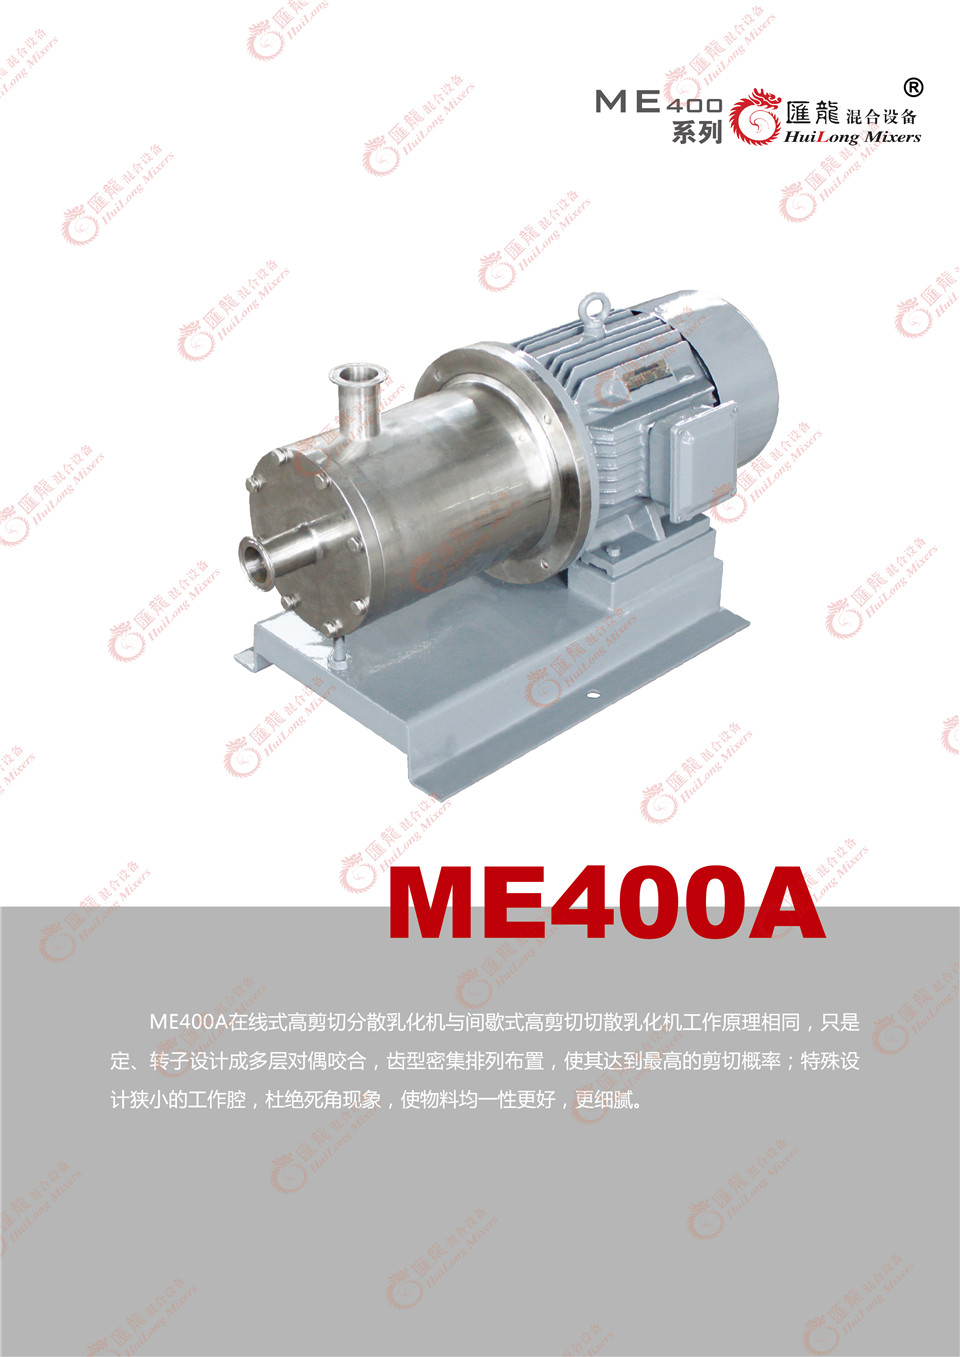 “ME400B型乳化机”/